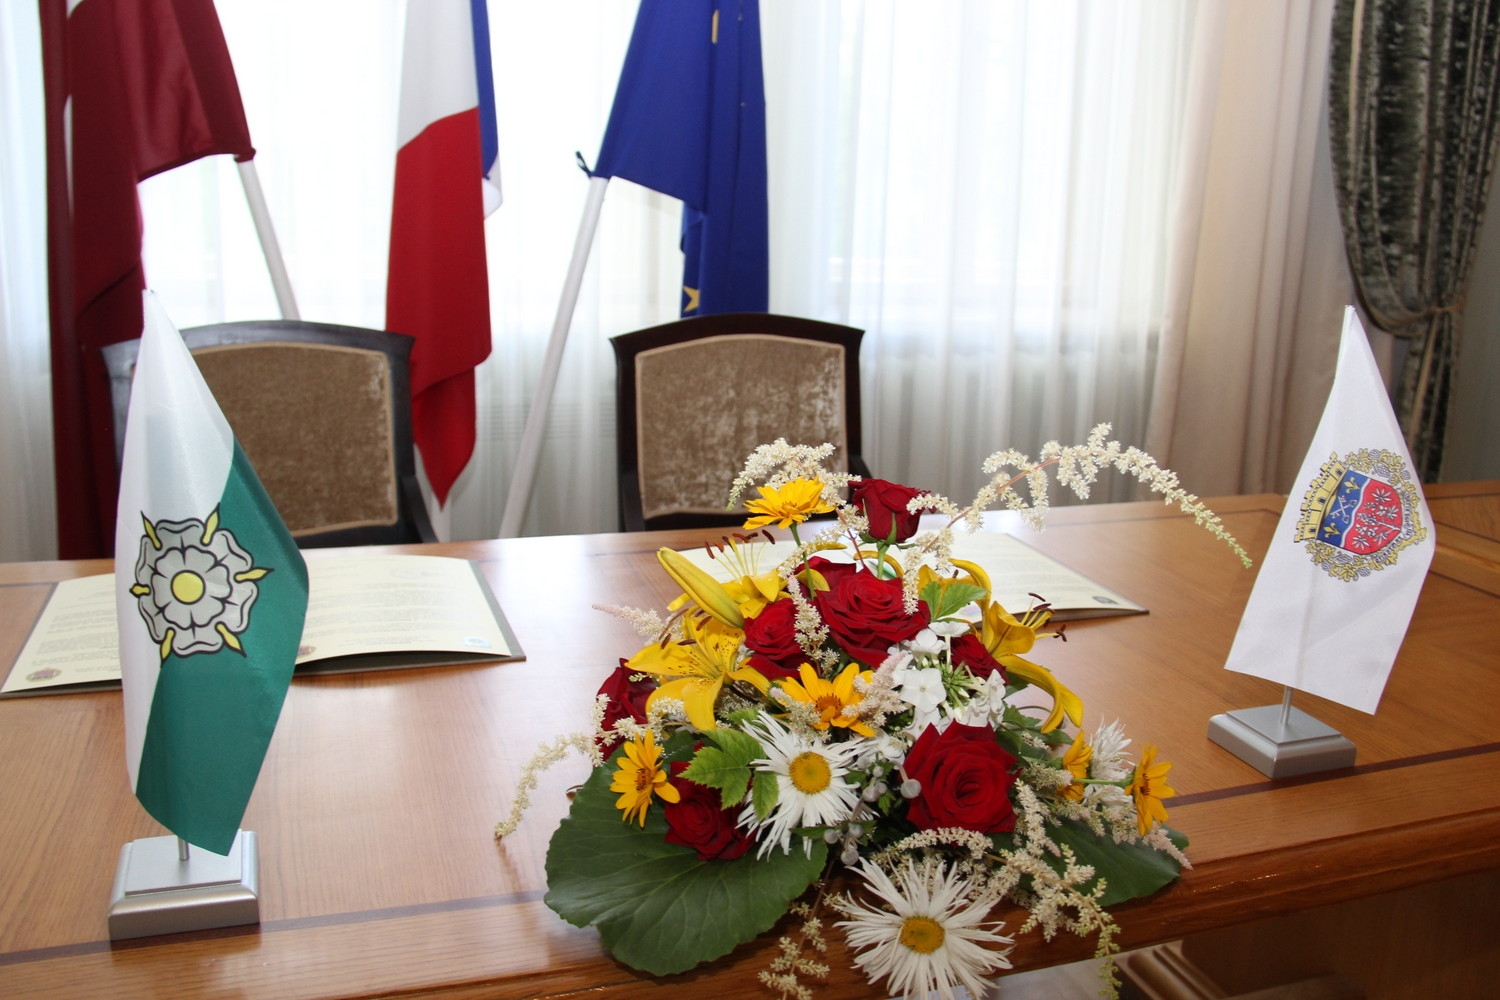 Sadarbības līguma parakstīšana starp Tukuma un Šenevjēras pašvaldībām